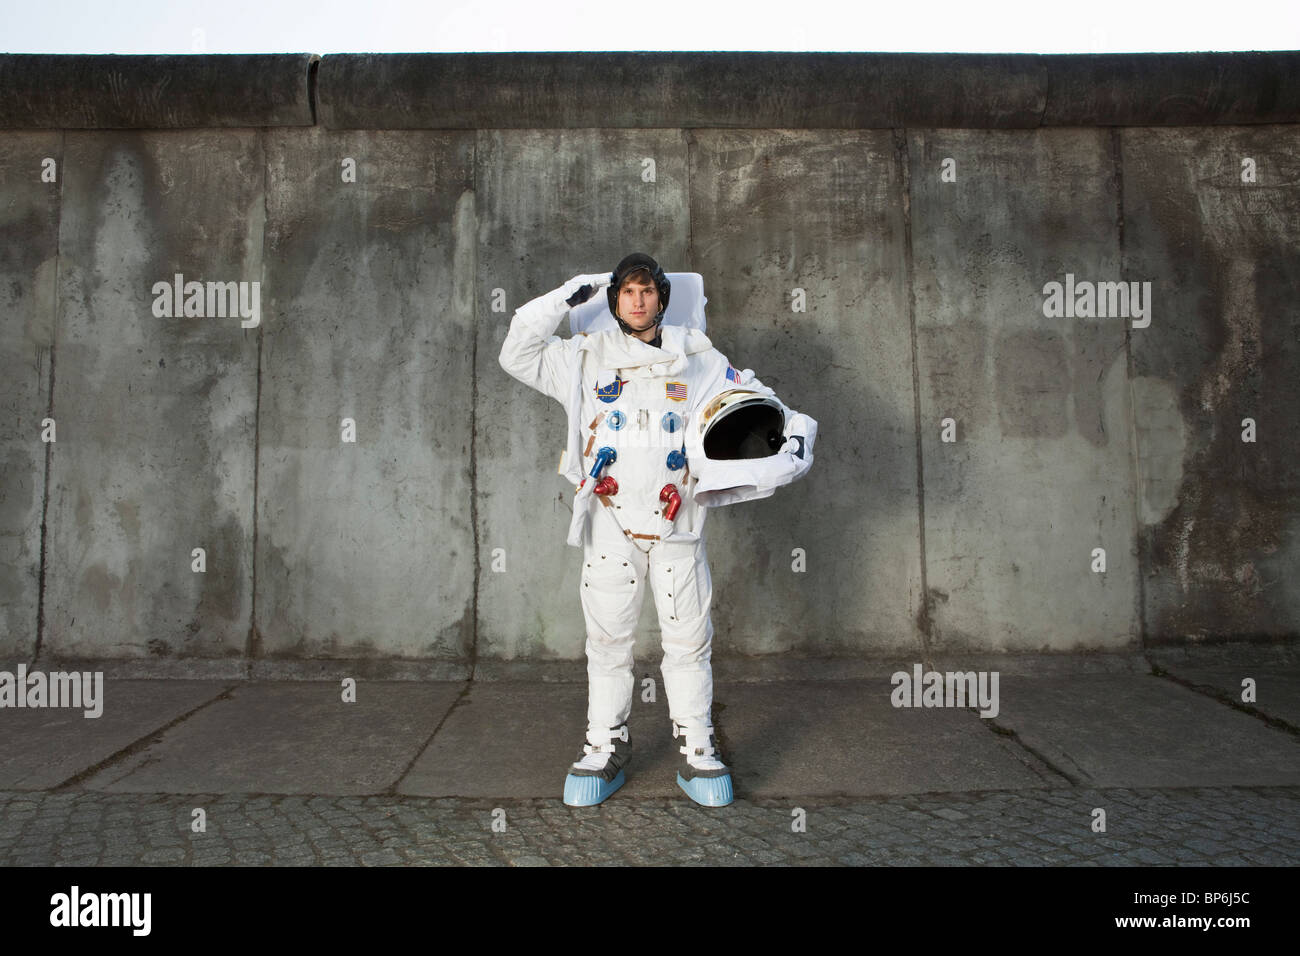 Eine begrüssende Astronaut, stehend auf einem Bürgersteig in einer Stadt Stockfoto